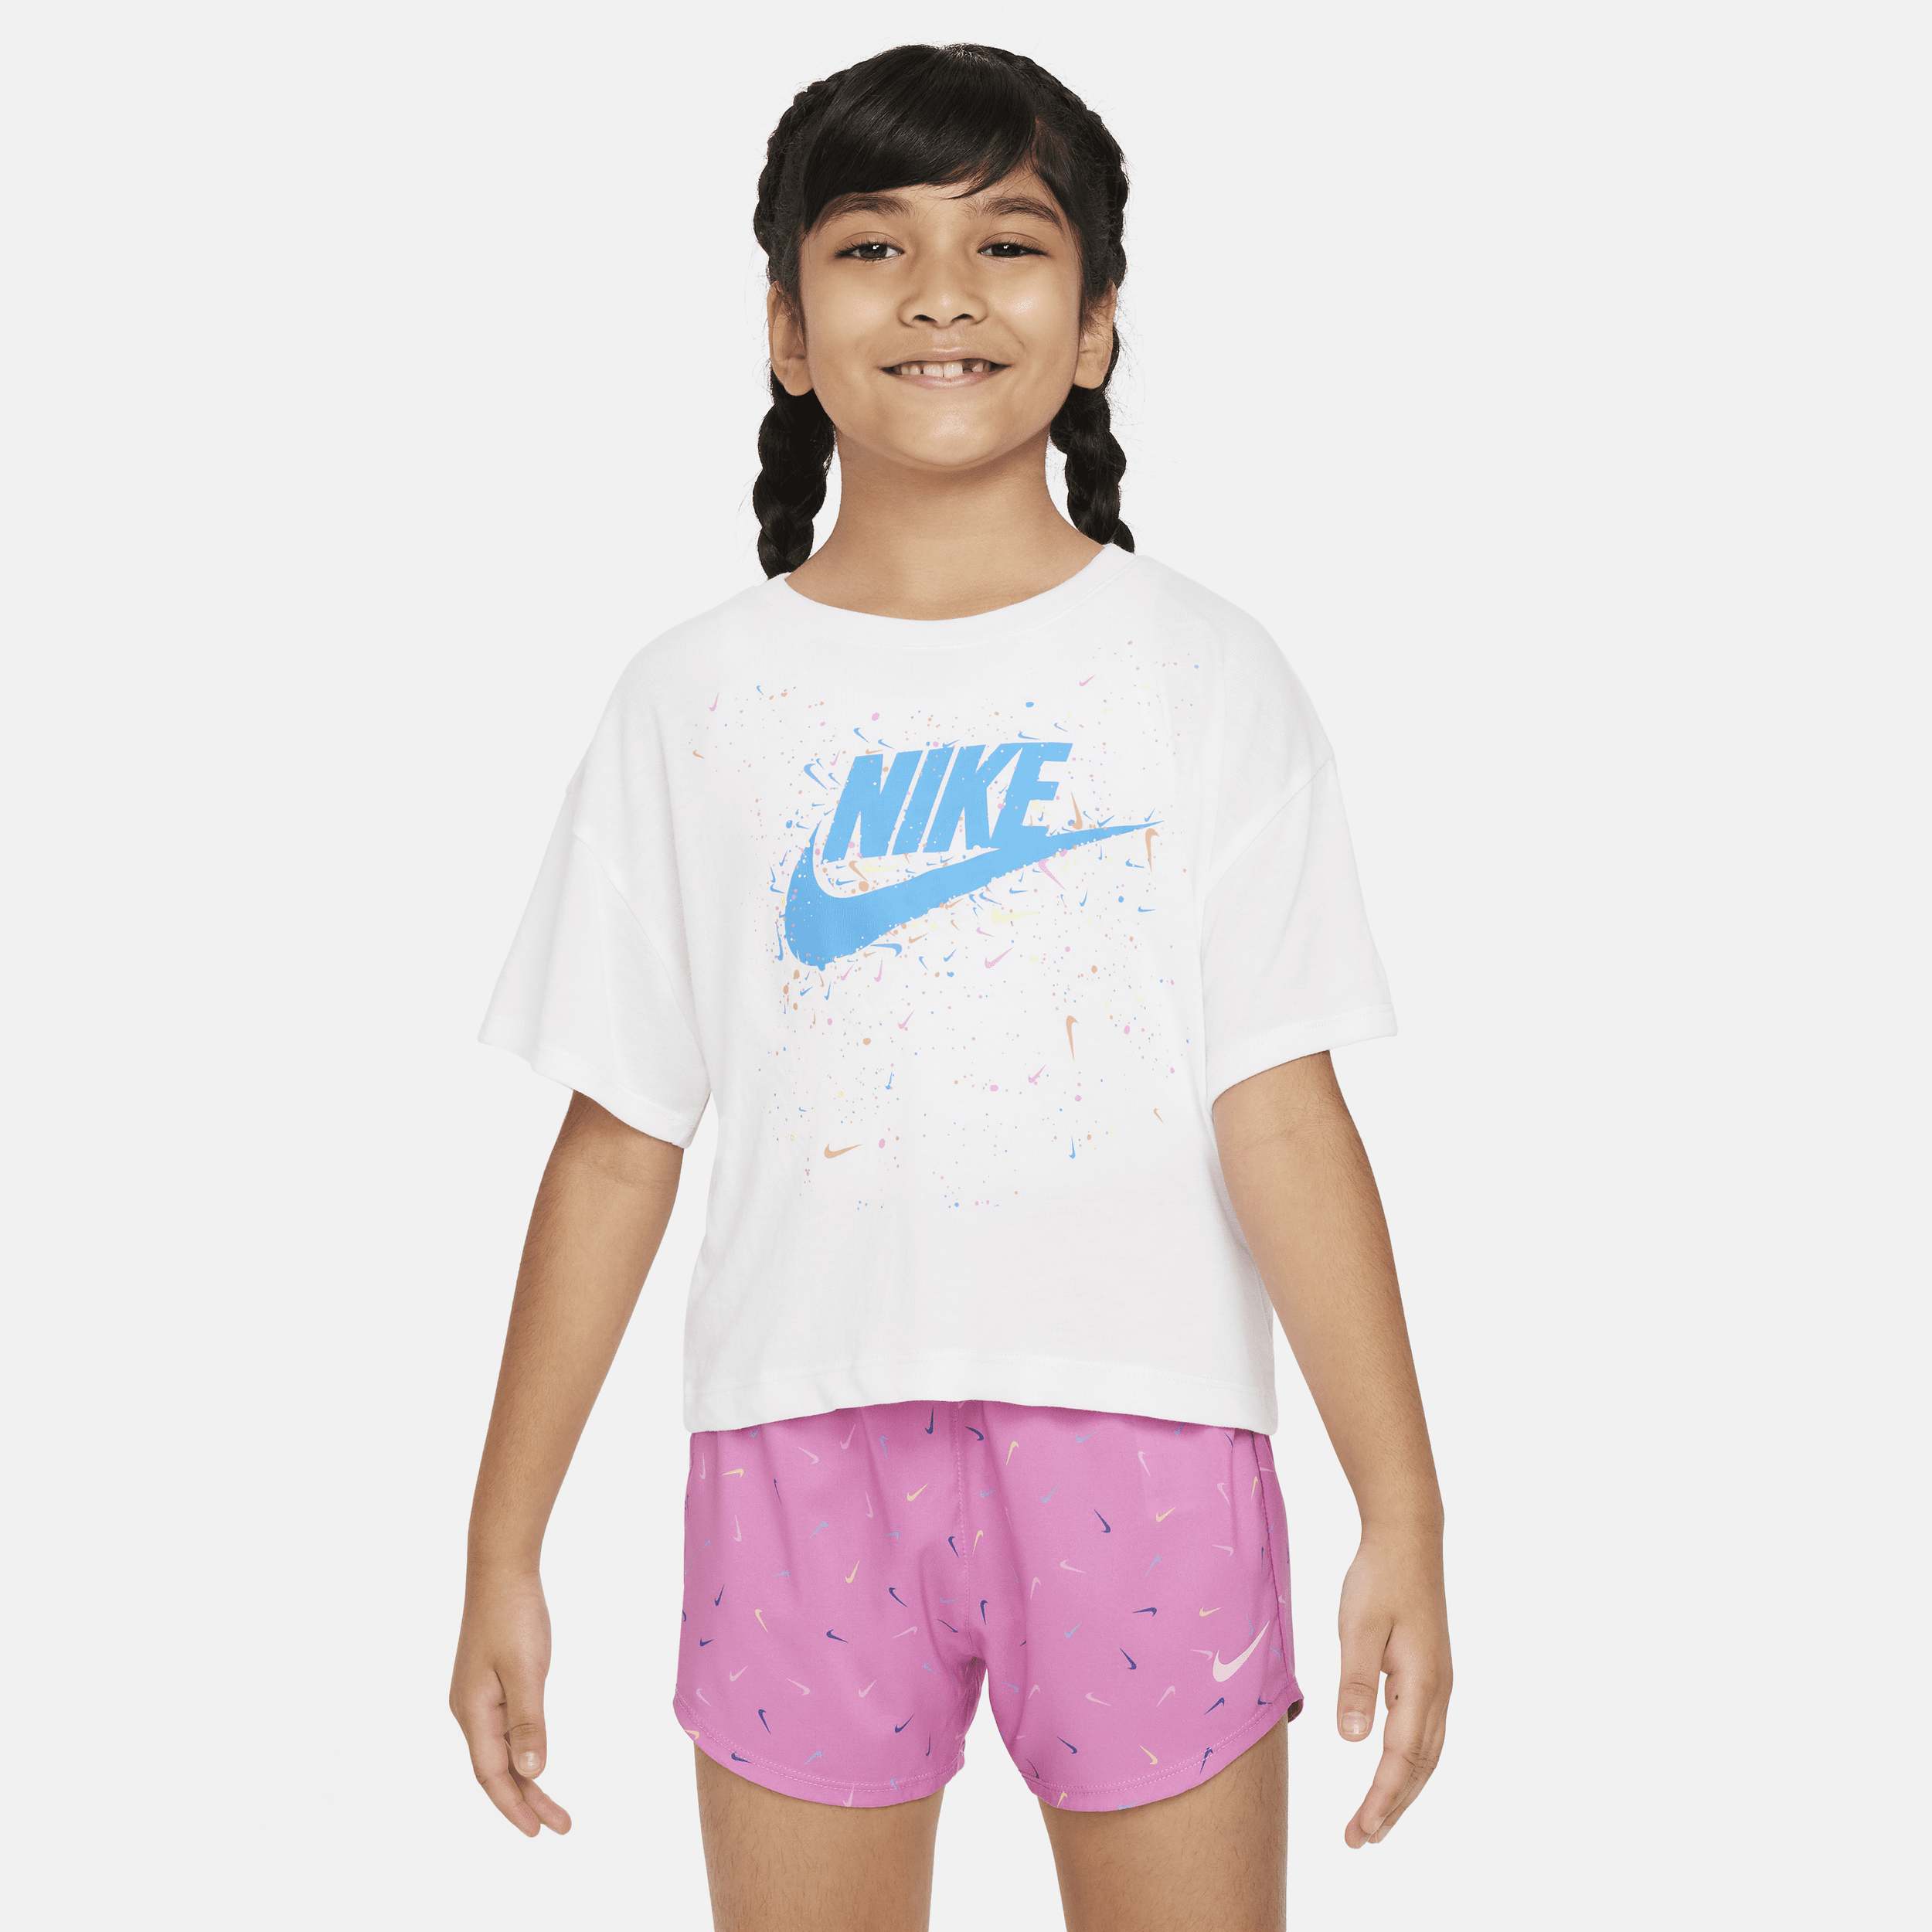 T-shirt Nike - Bambini - Bianco